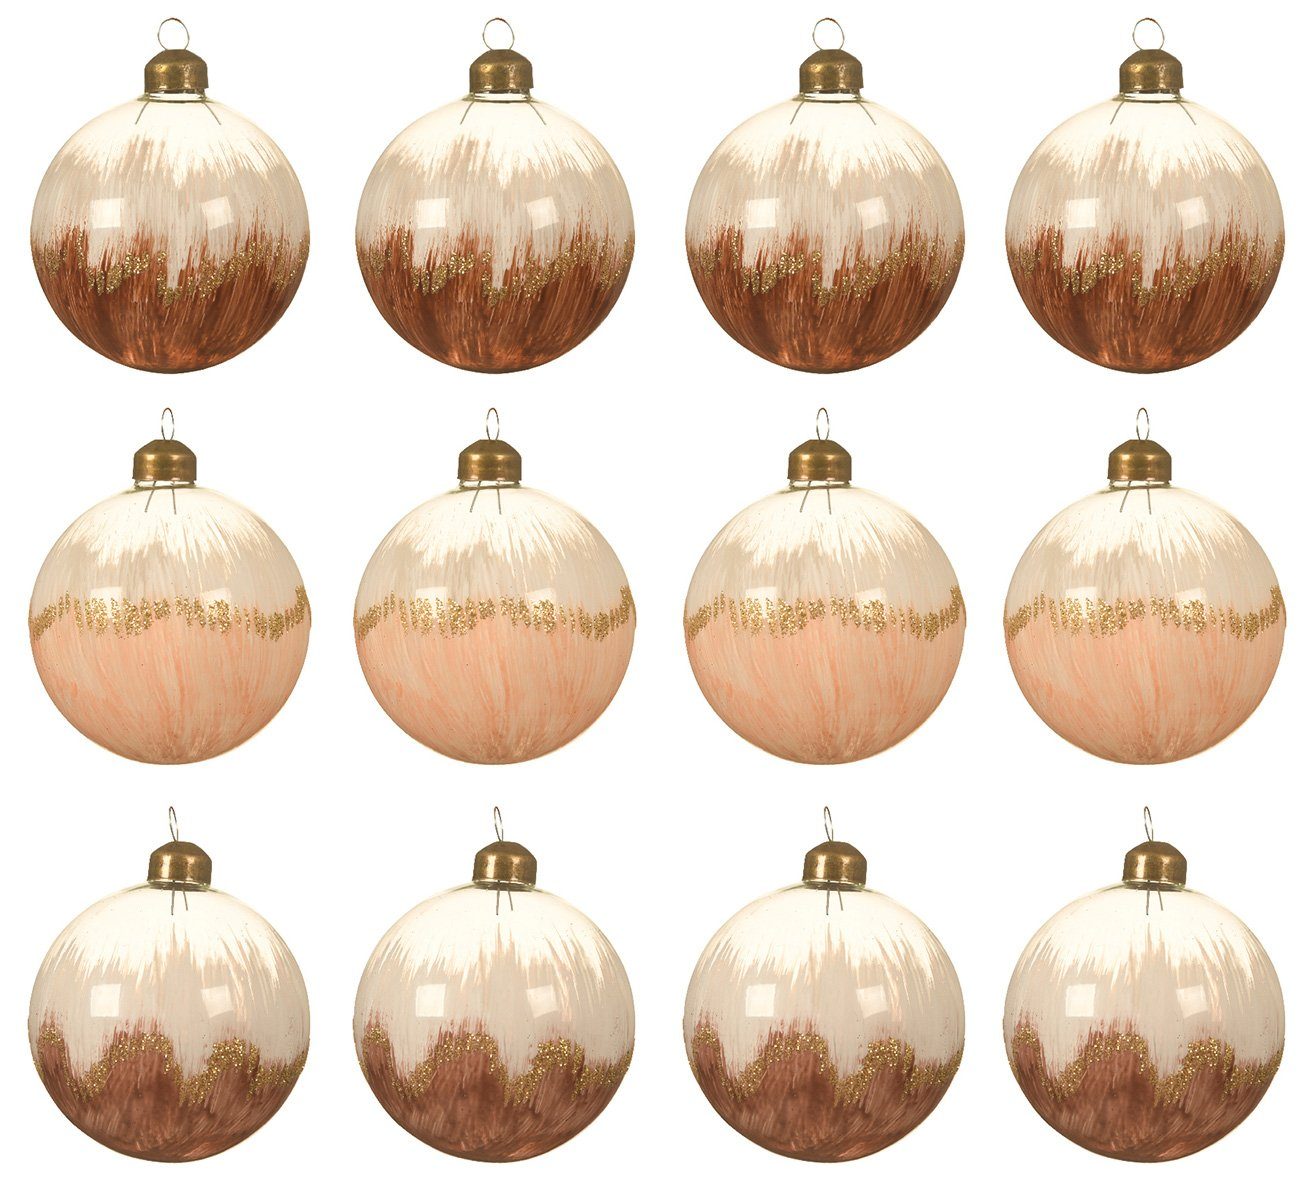 Decoris season decorations Weihnachtsbaumkugel, Weihnachtskugeln Glas 8cm bemalt mit Verlauf 12er Set braun / beige